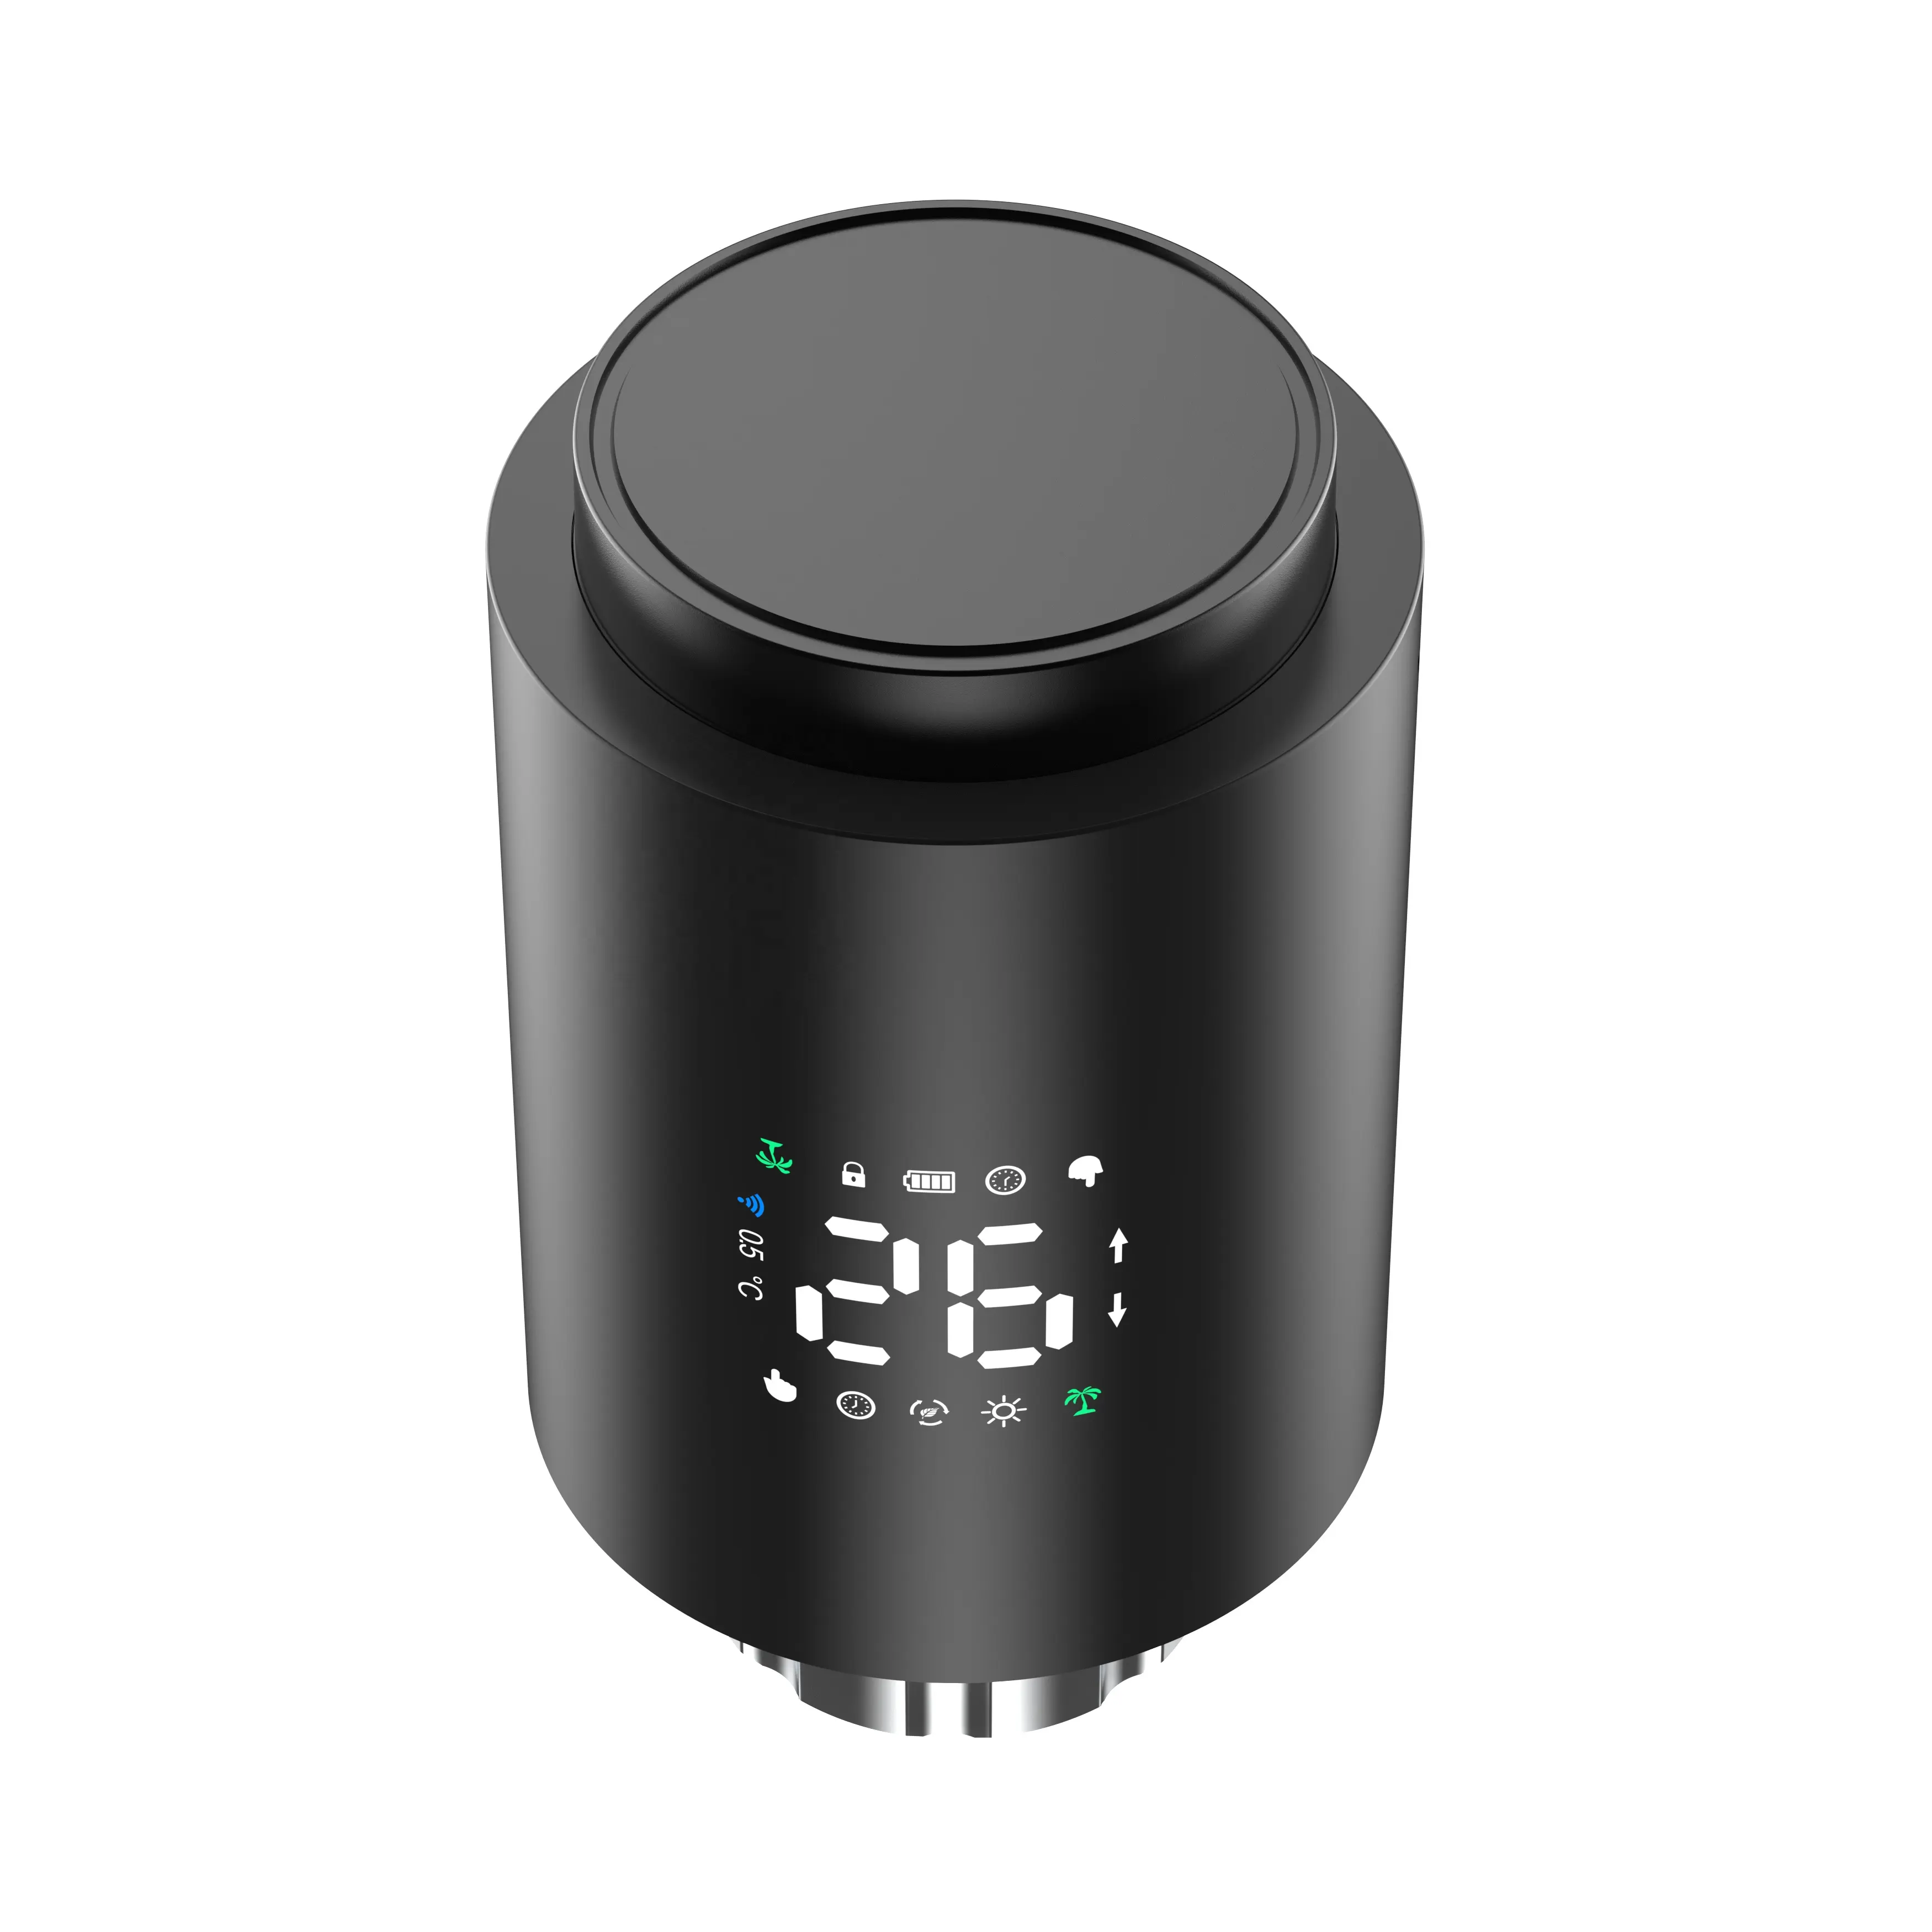 ZigBee WiFi Smart Home Elektrisches Raumheizung system Intelligent 5 1 1-tägiges programmier bares Thermostat-Heizkörper ventil